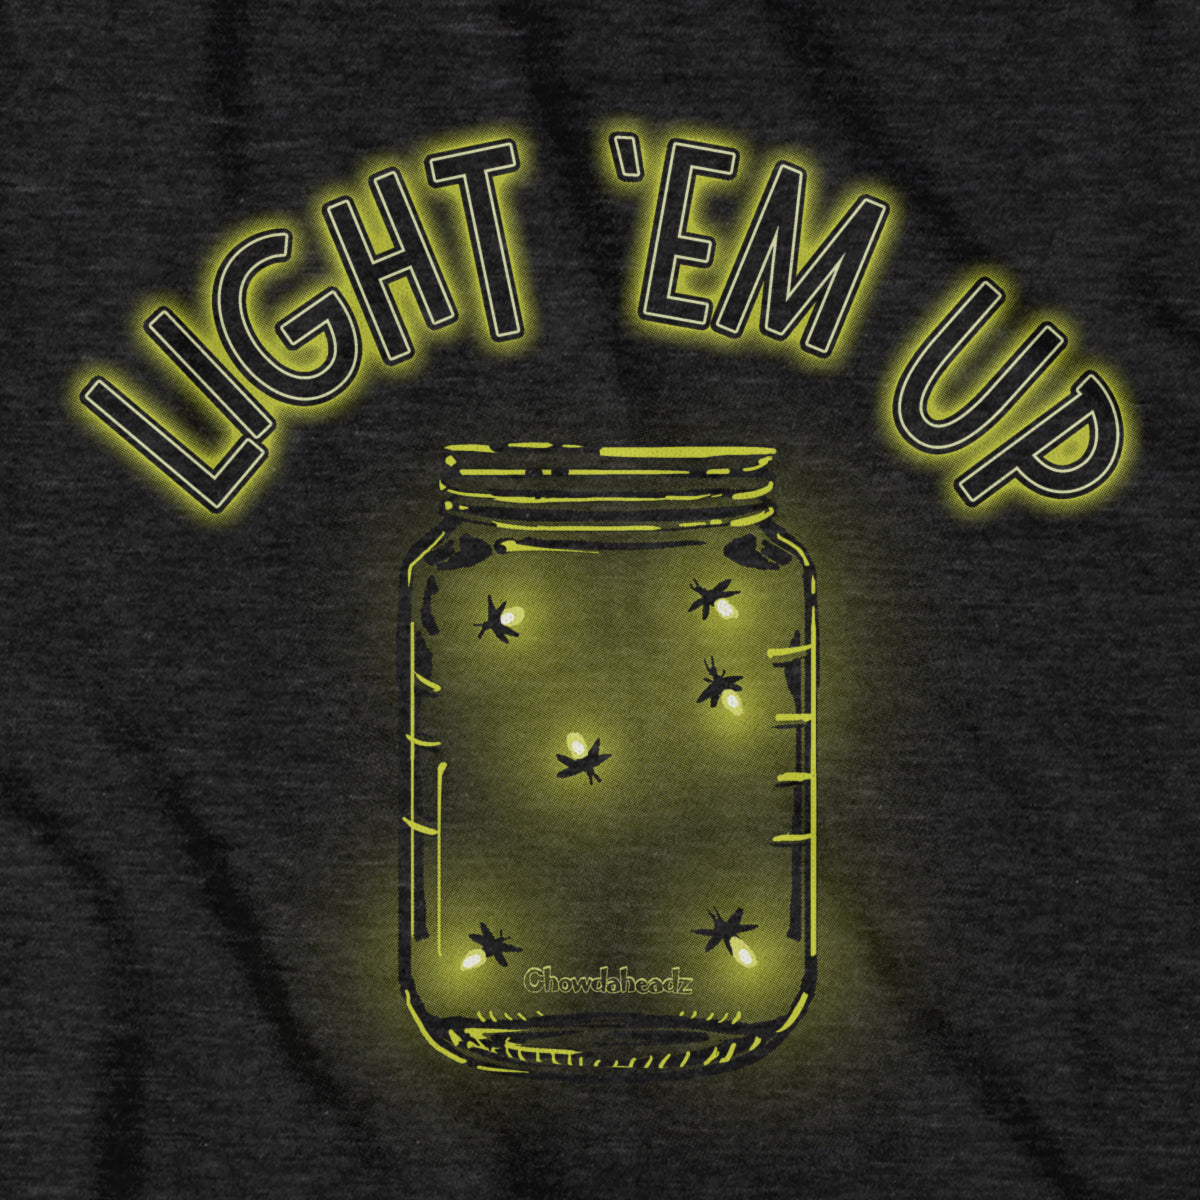 Light 'Em Up - Fireflies T-Shirt - Chowdaheadz